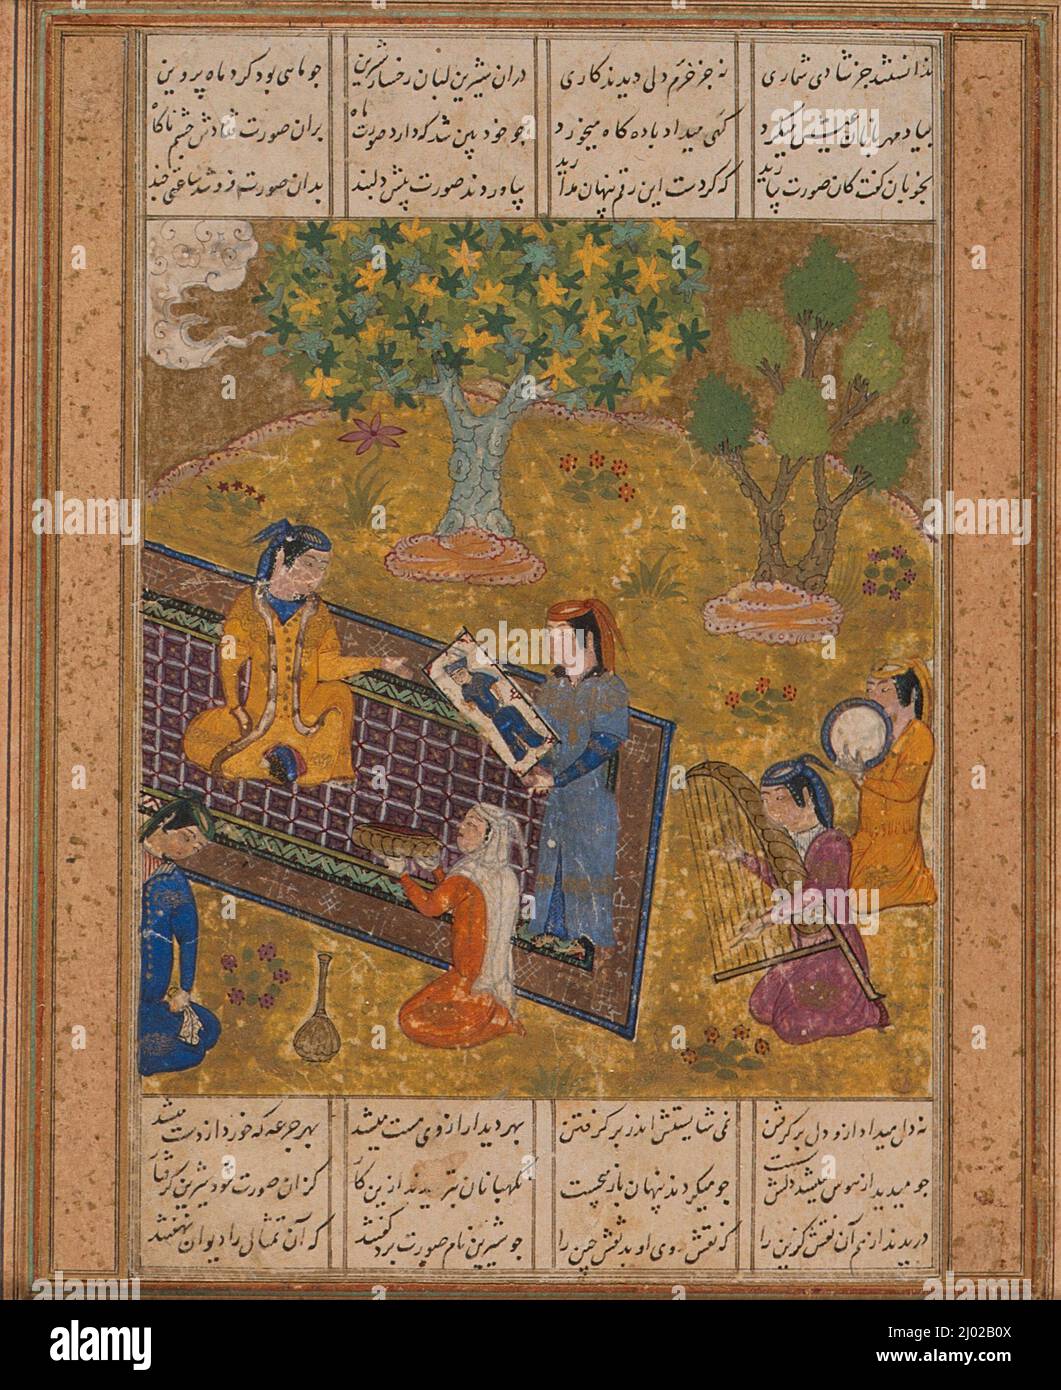 Shirin ve un retrato de Khusraw, página de un manuscrito del Khamsa (Quinteto) de Nizami. Afganistán, Herat, mediados del siglo 15th. Manuscritos; folios. Tinta, acuarela opaca y oro sobre papel Foto de stock